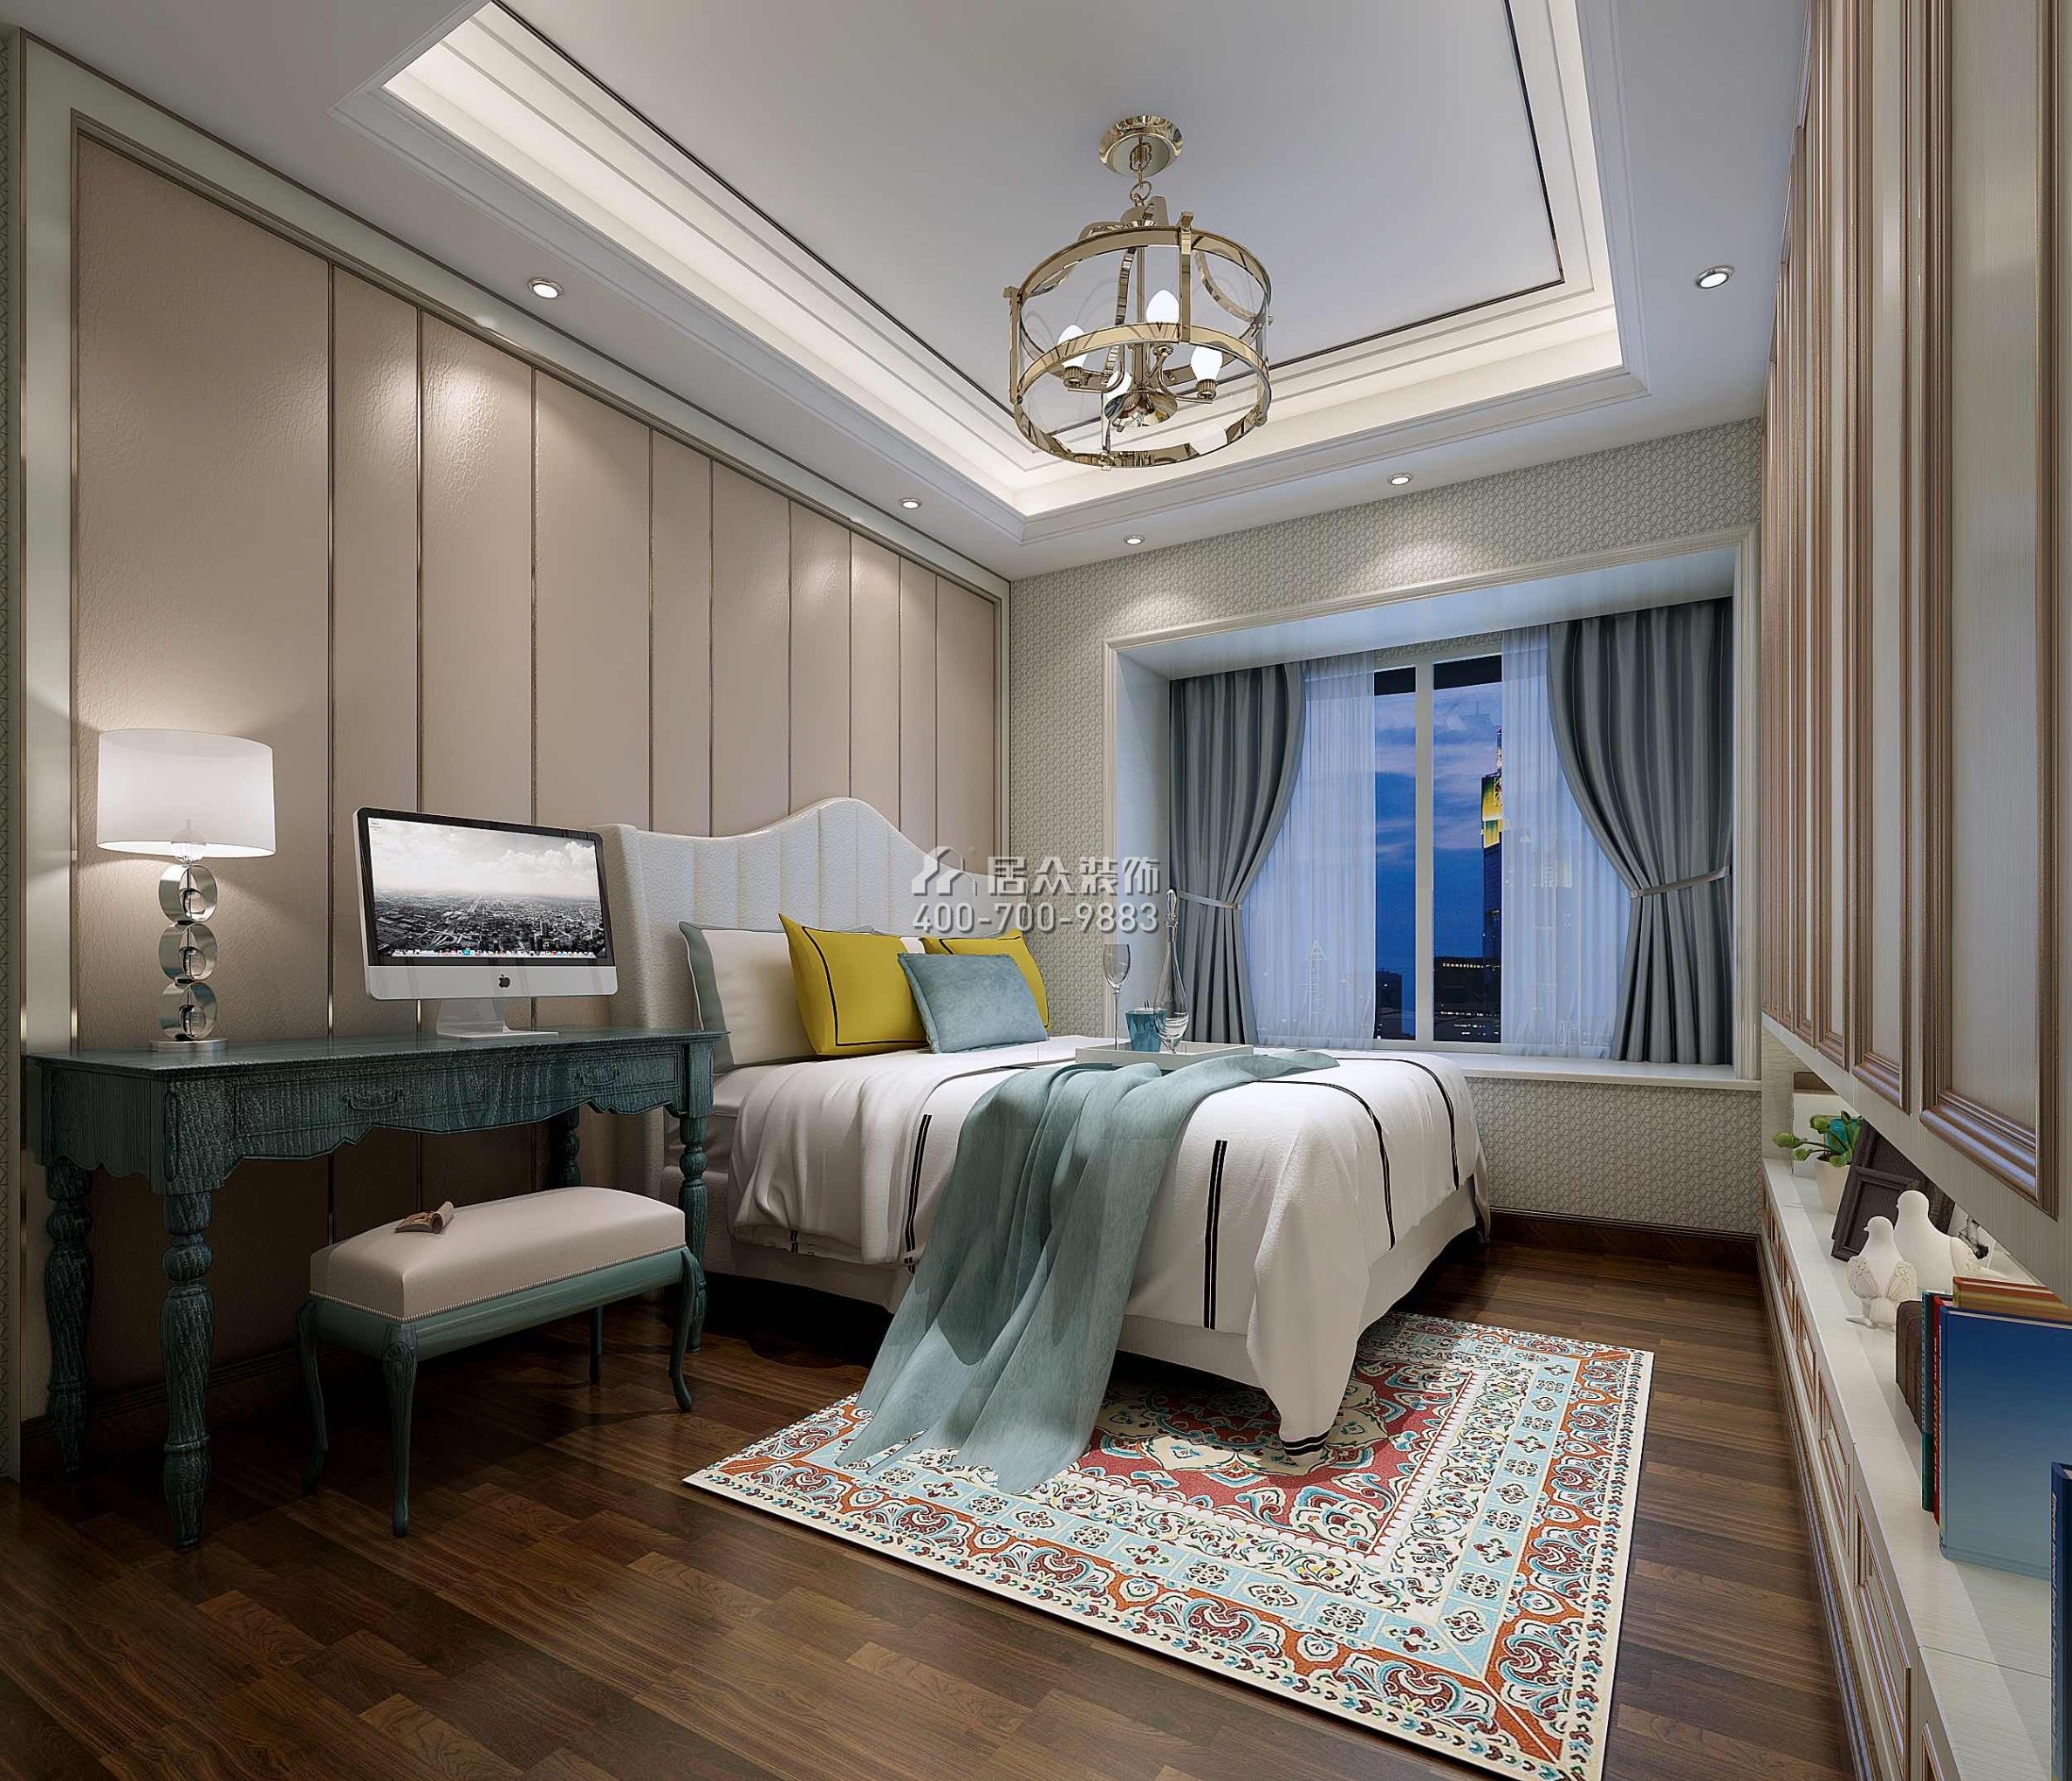 山语清晖218平方米现代简约风格平层户型卧室装修效果图